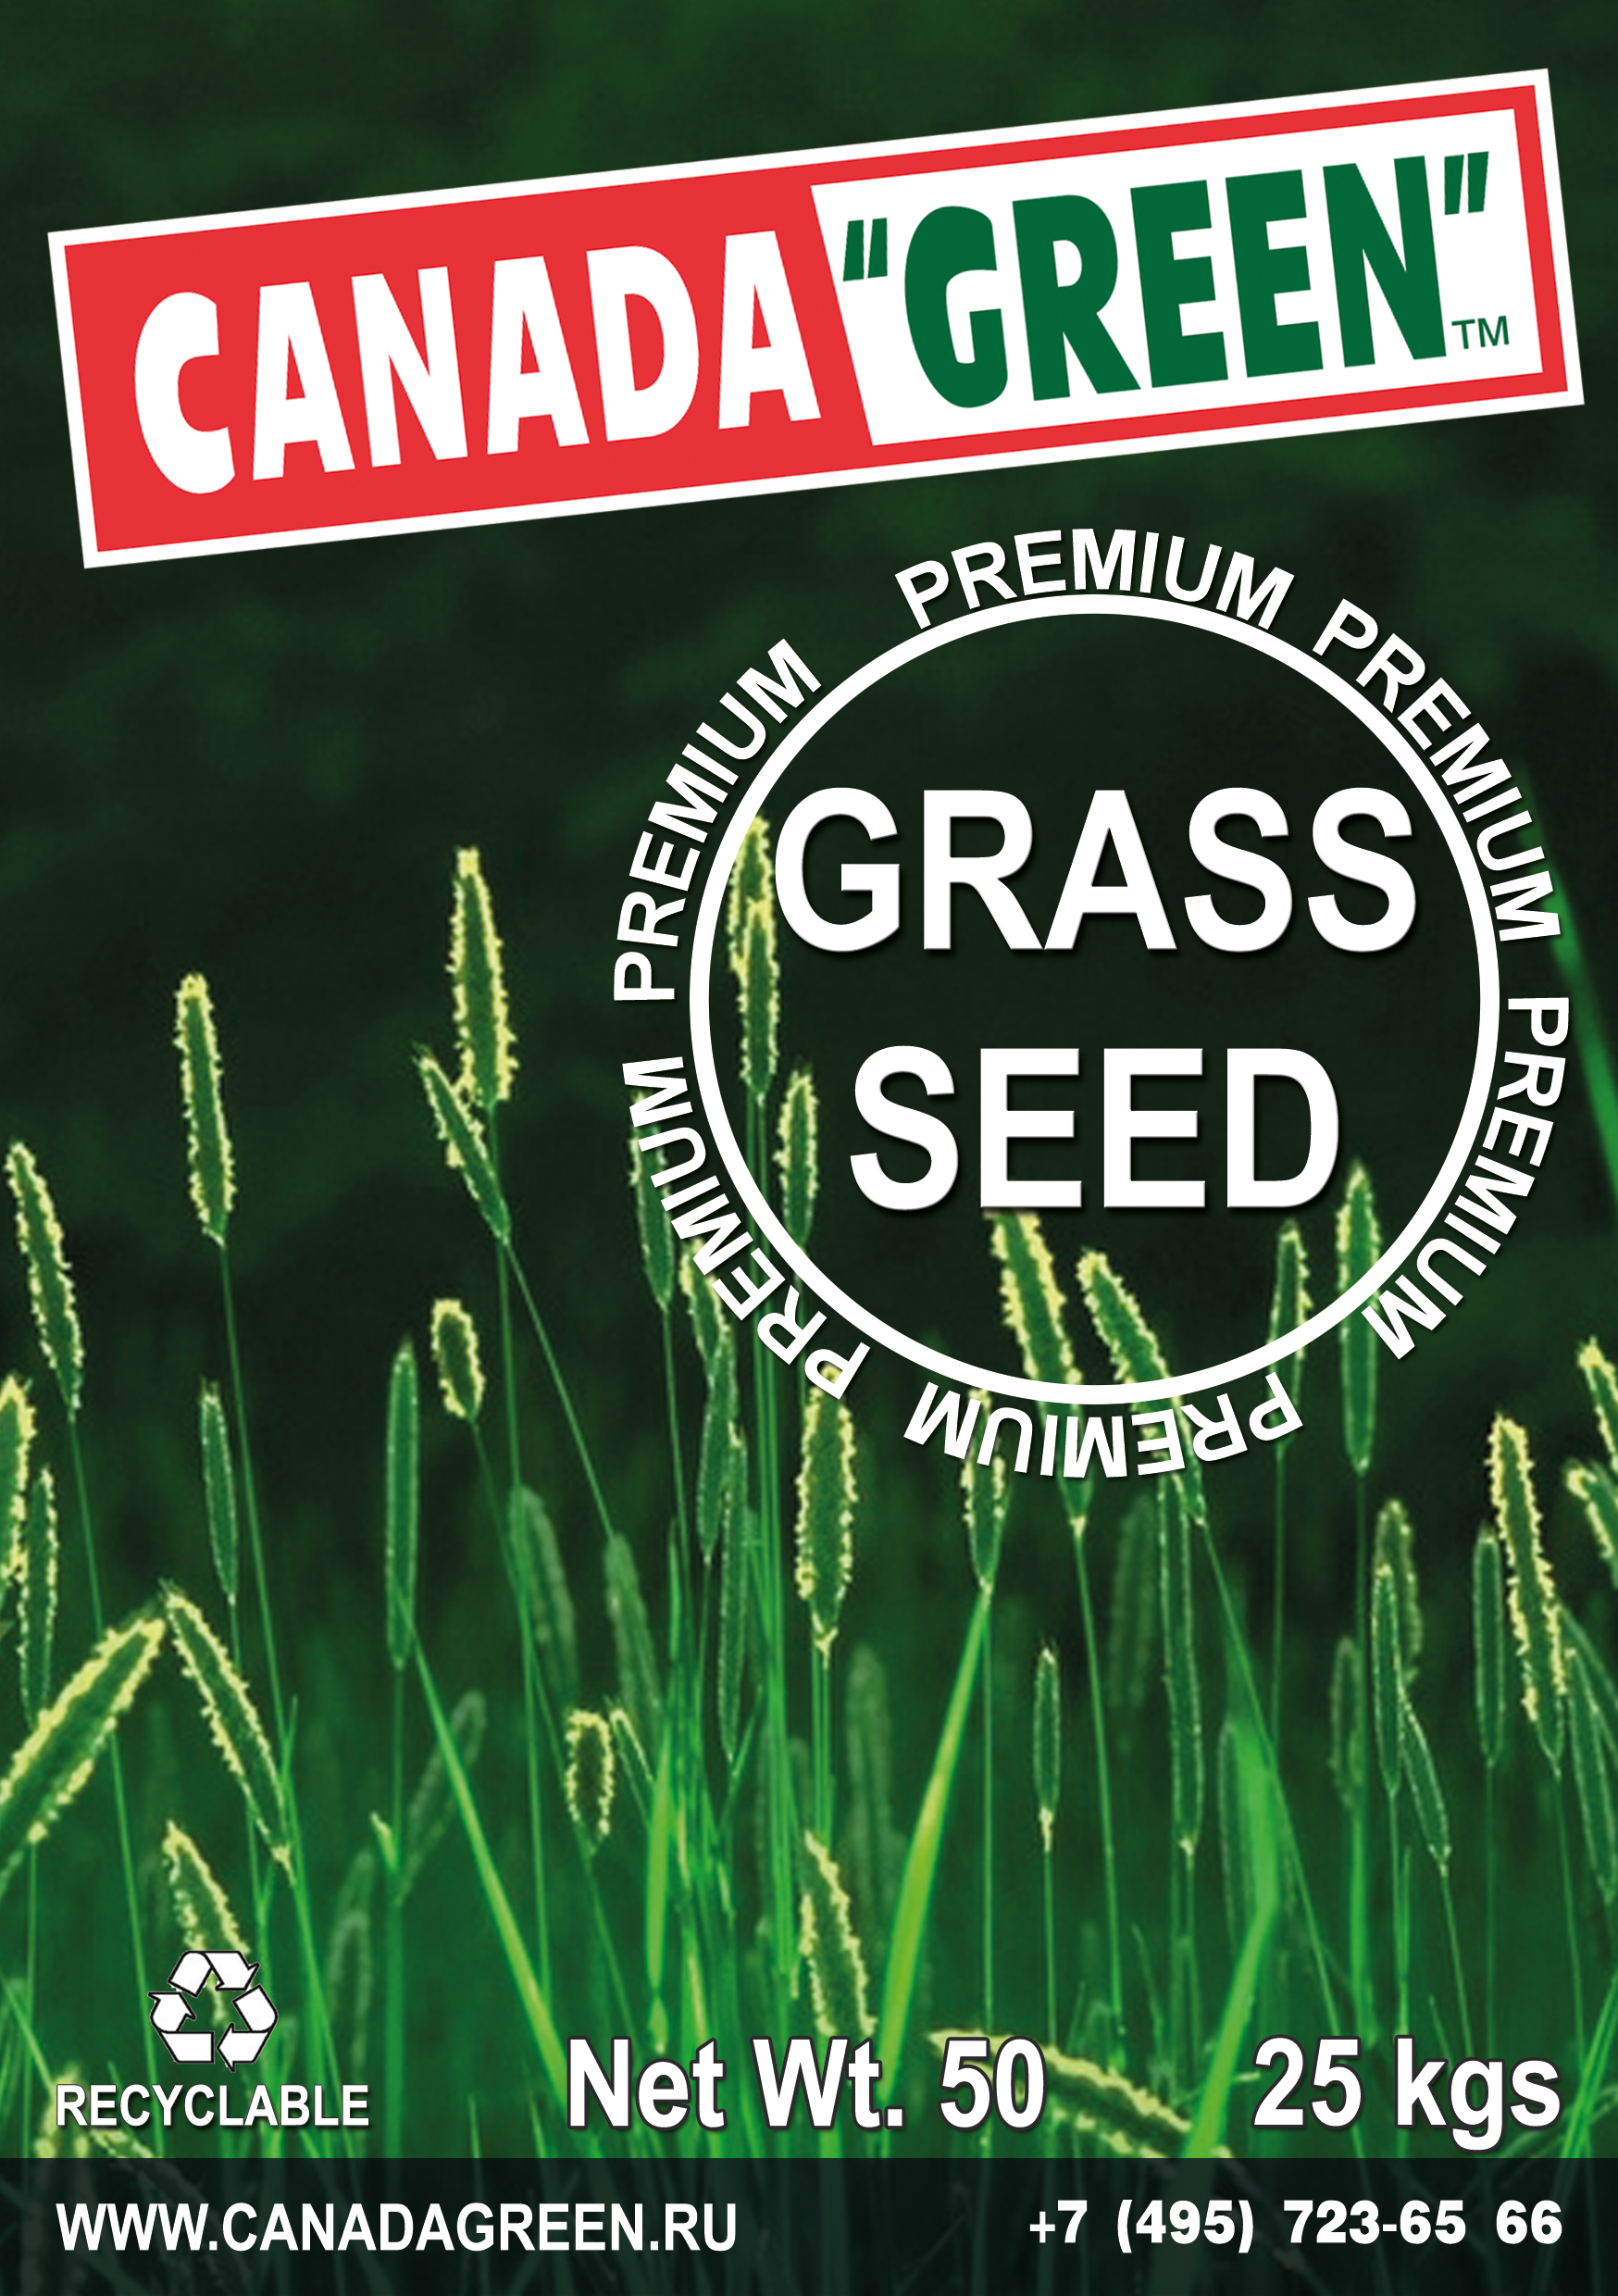 Канада грин газонная трава. Травосмесь Канада Грин. Газонная трава Canada Green "Premium". Газонная трава Canada Green "Premium" - семена.